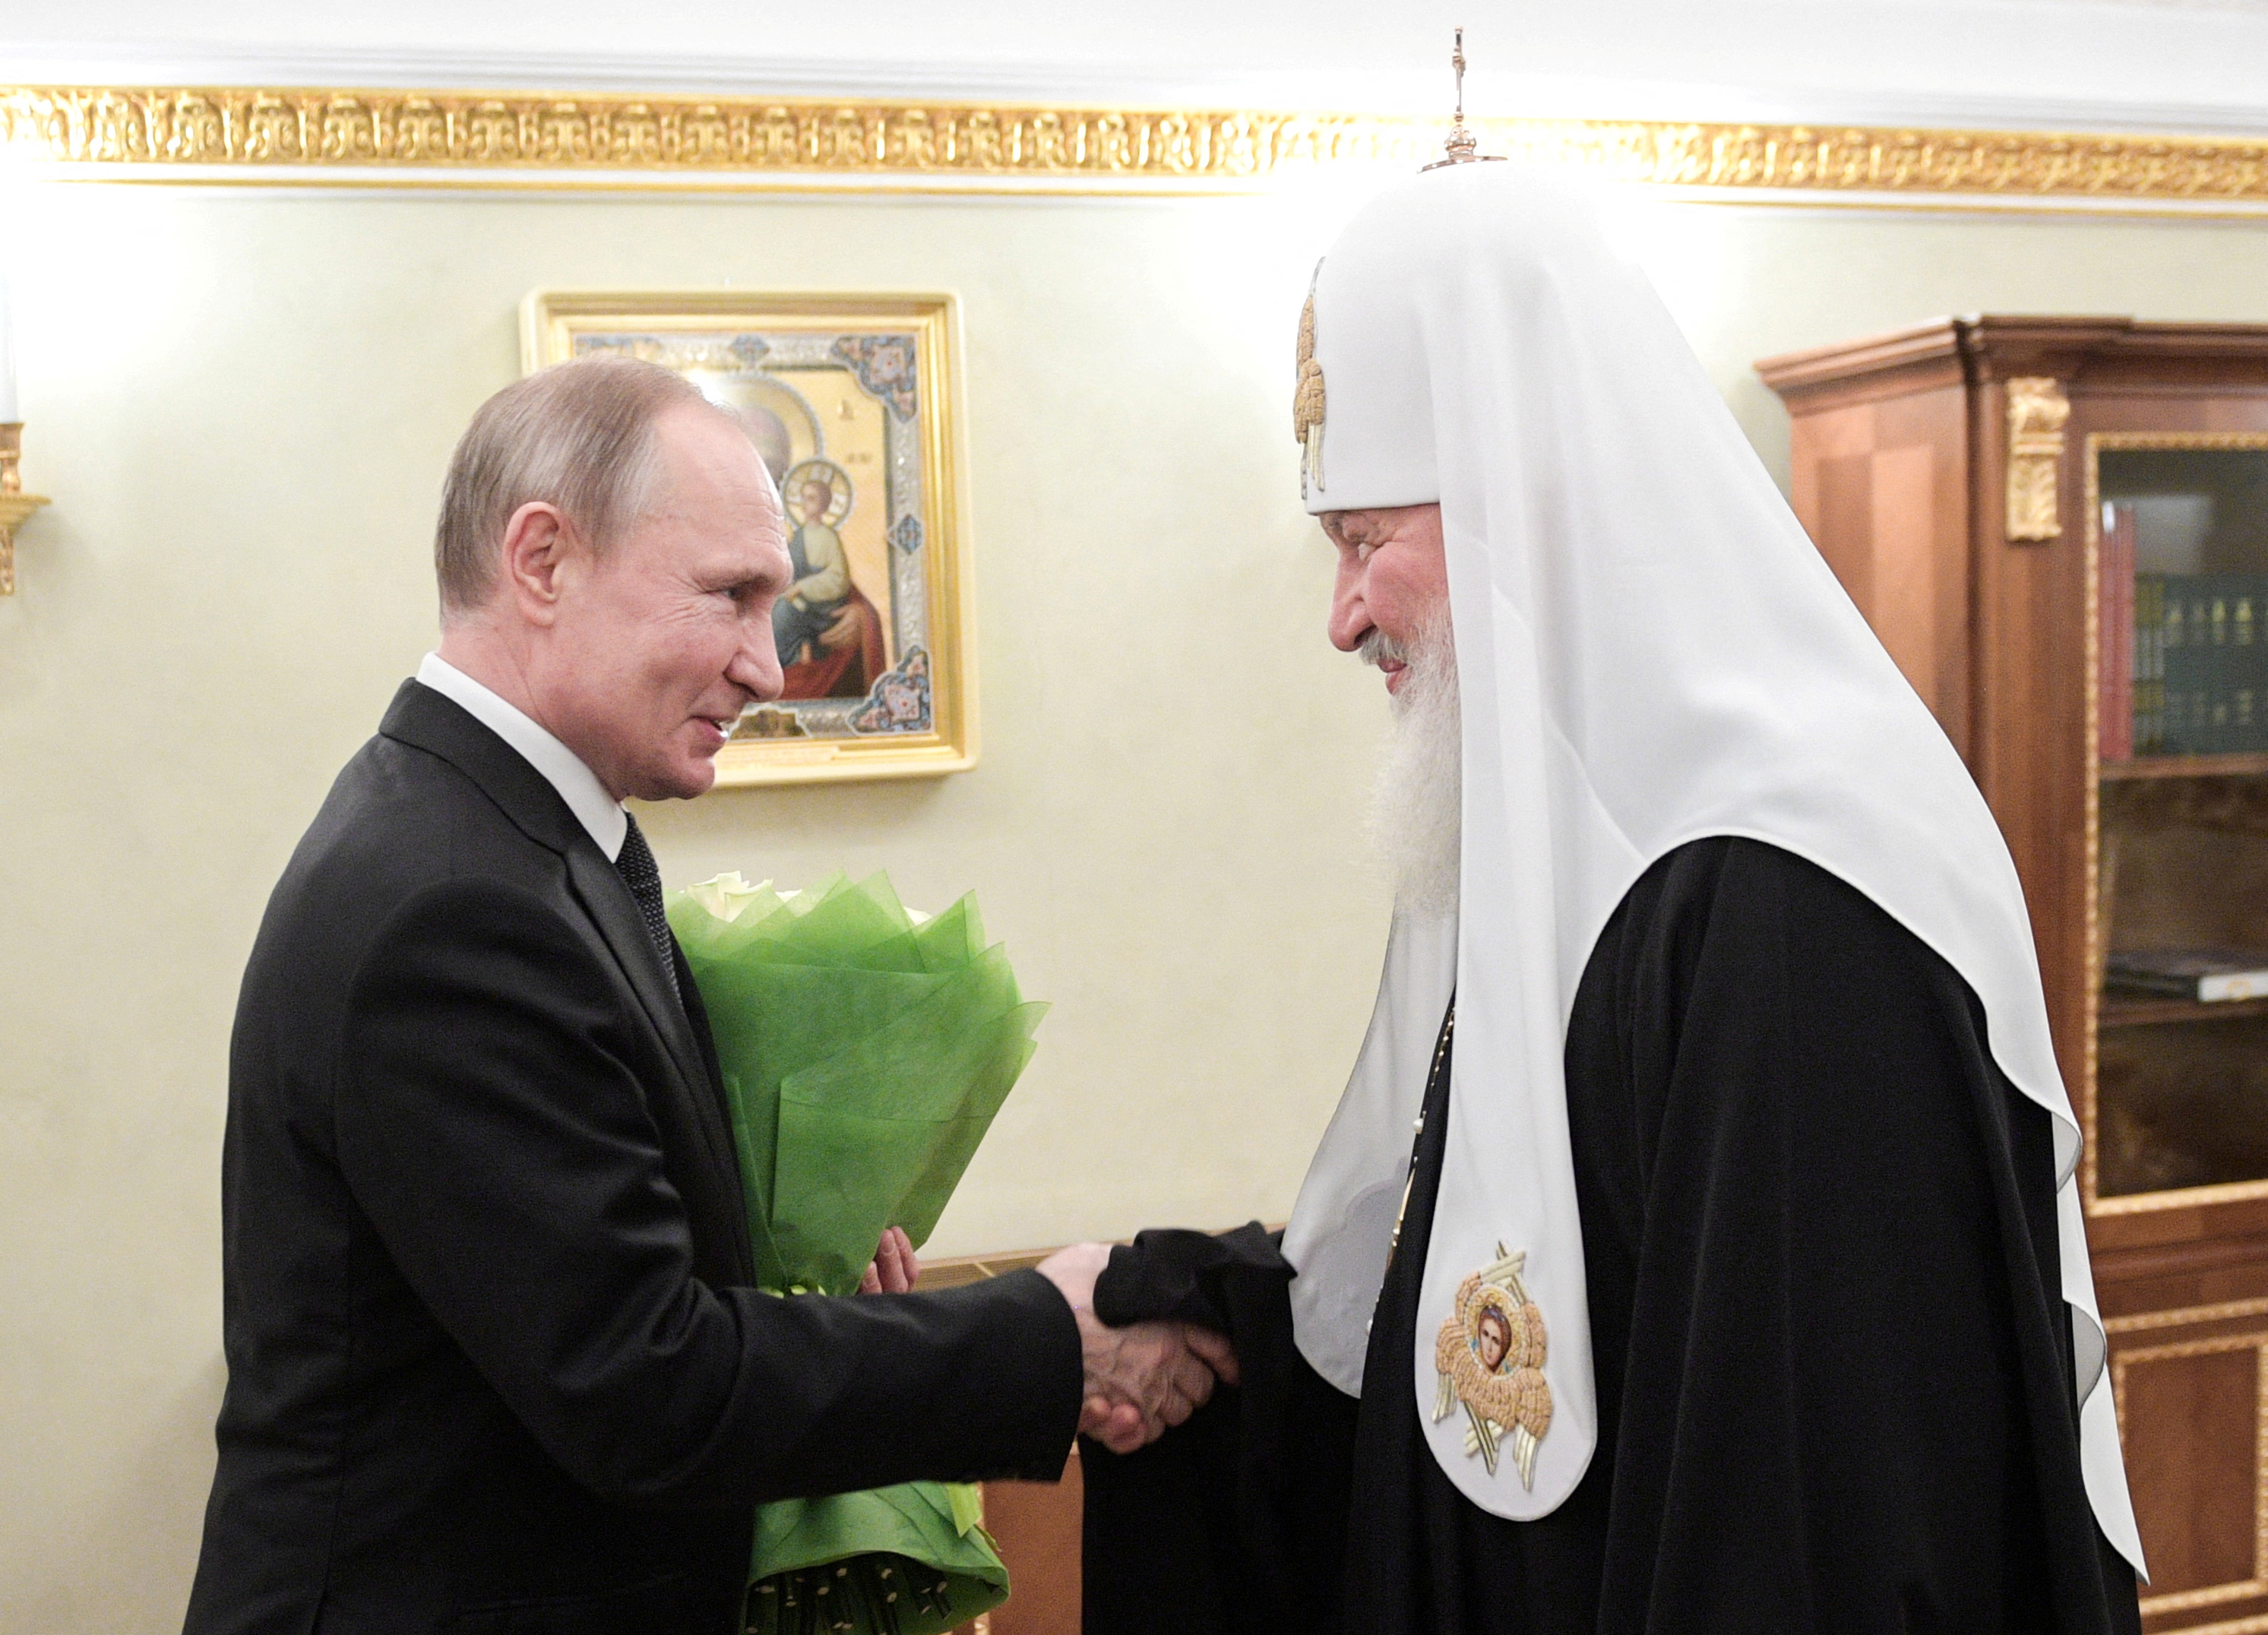 El patriarca ruso fue el que promovió la idea del “Mundo Ruso”  (Sputnik/Alexei Druzhinin/Kremlin via REUTERS)